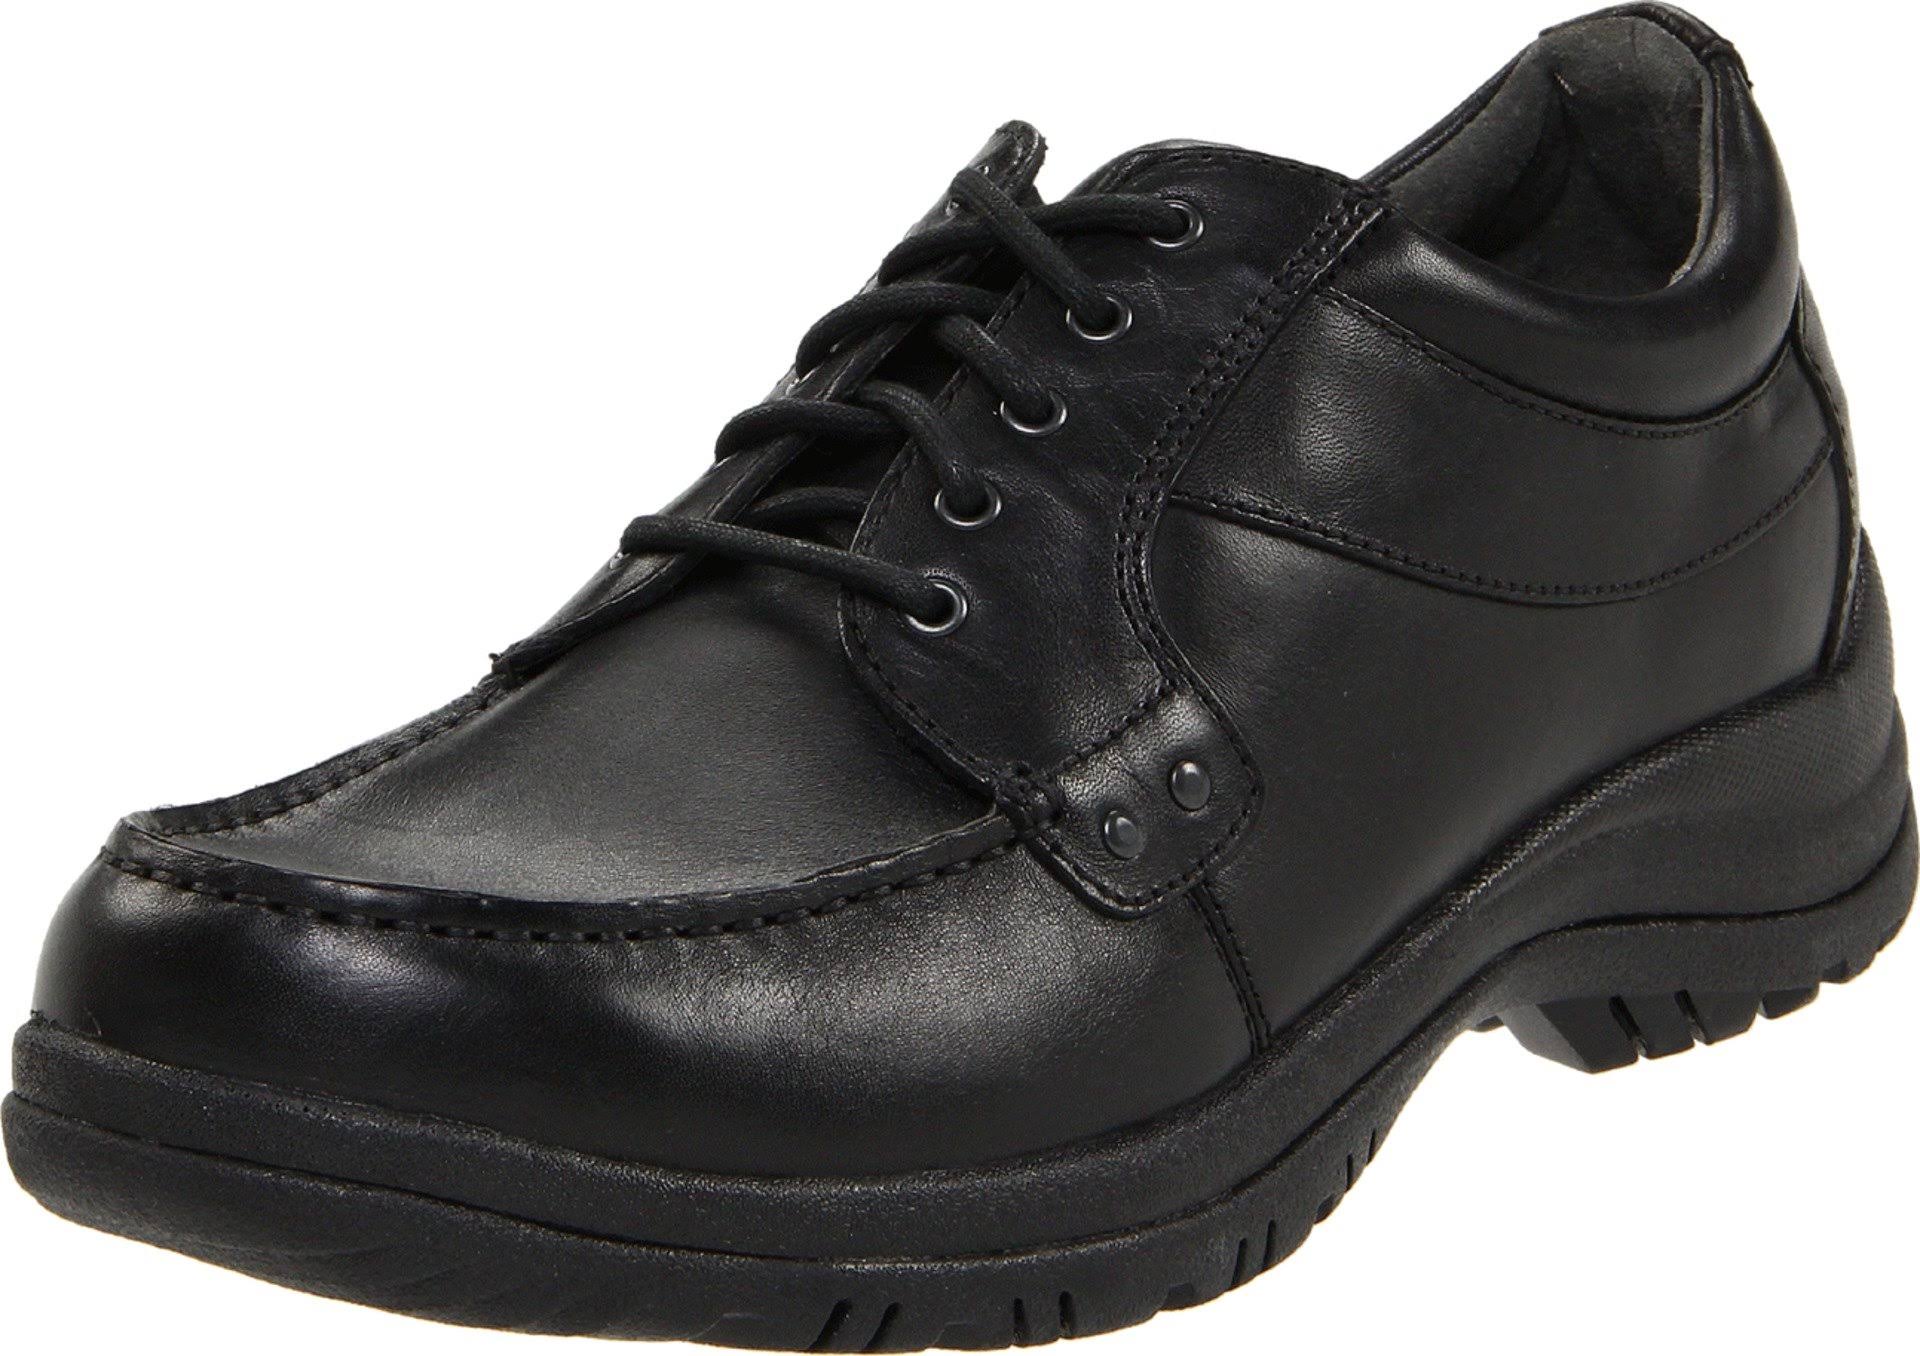 Dansko Men's Wyatt Loafer Shoes - Black Full Grain, 43 EU